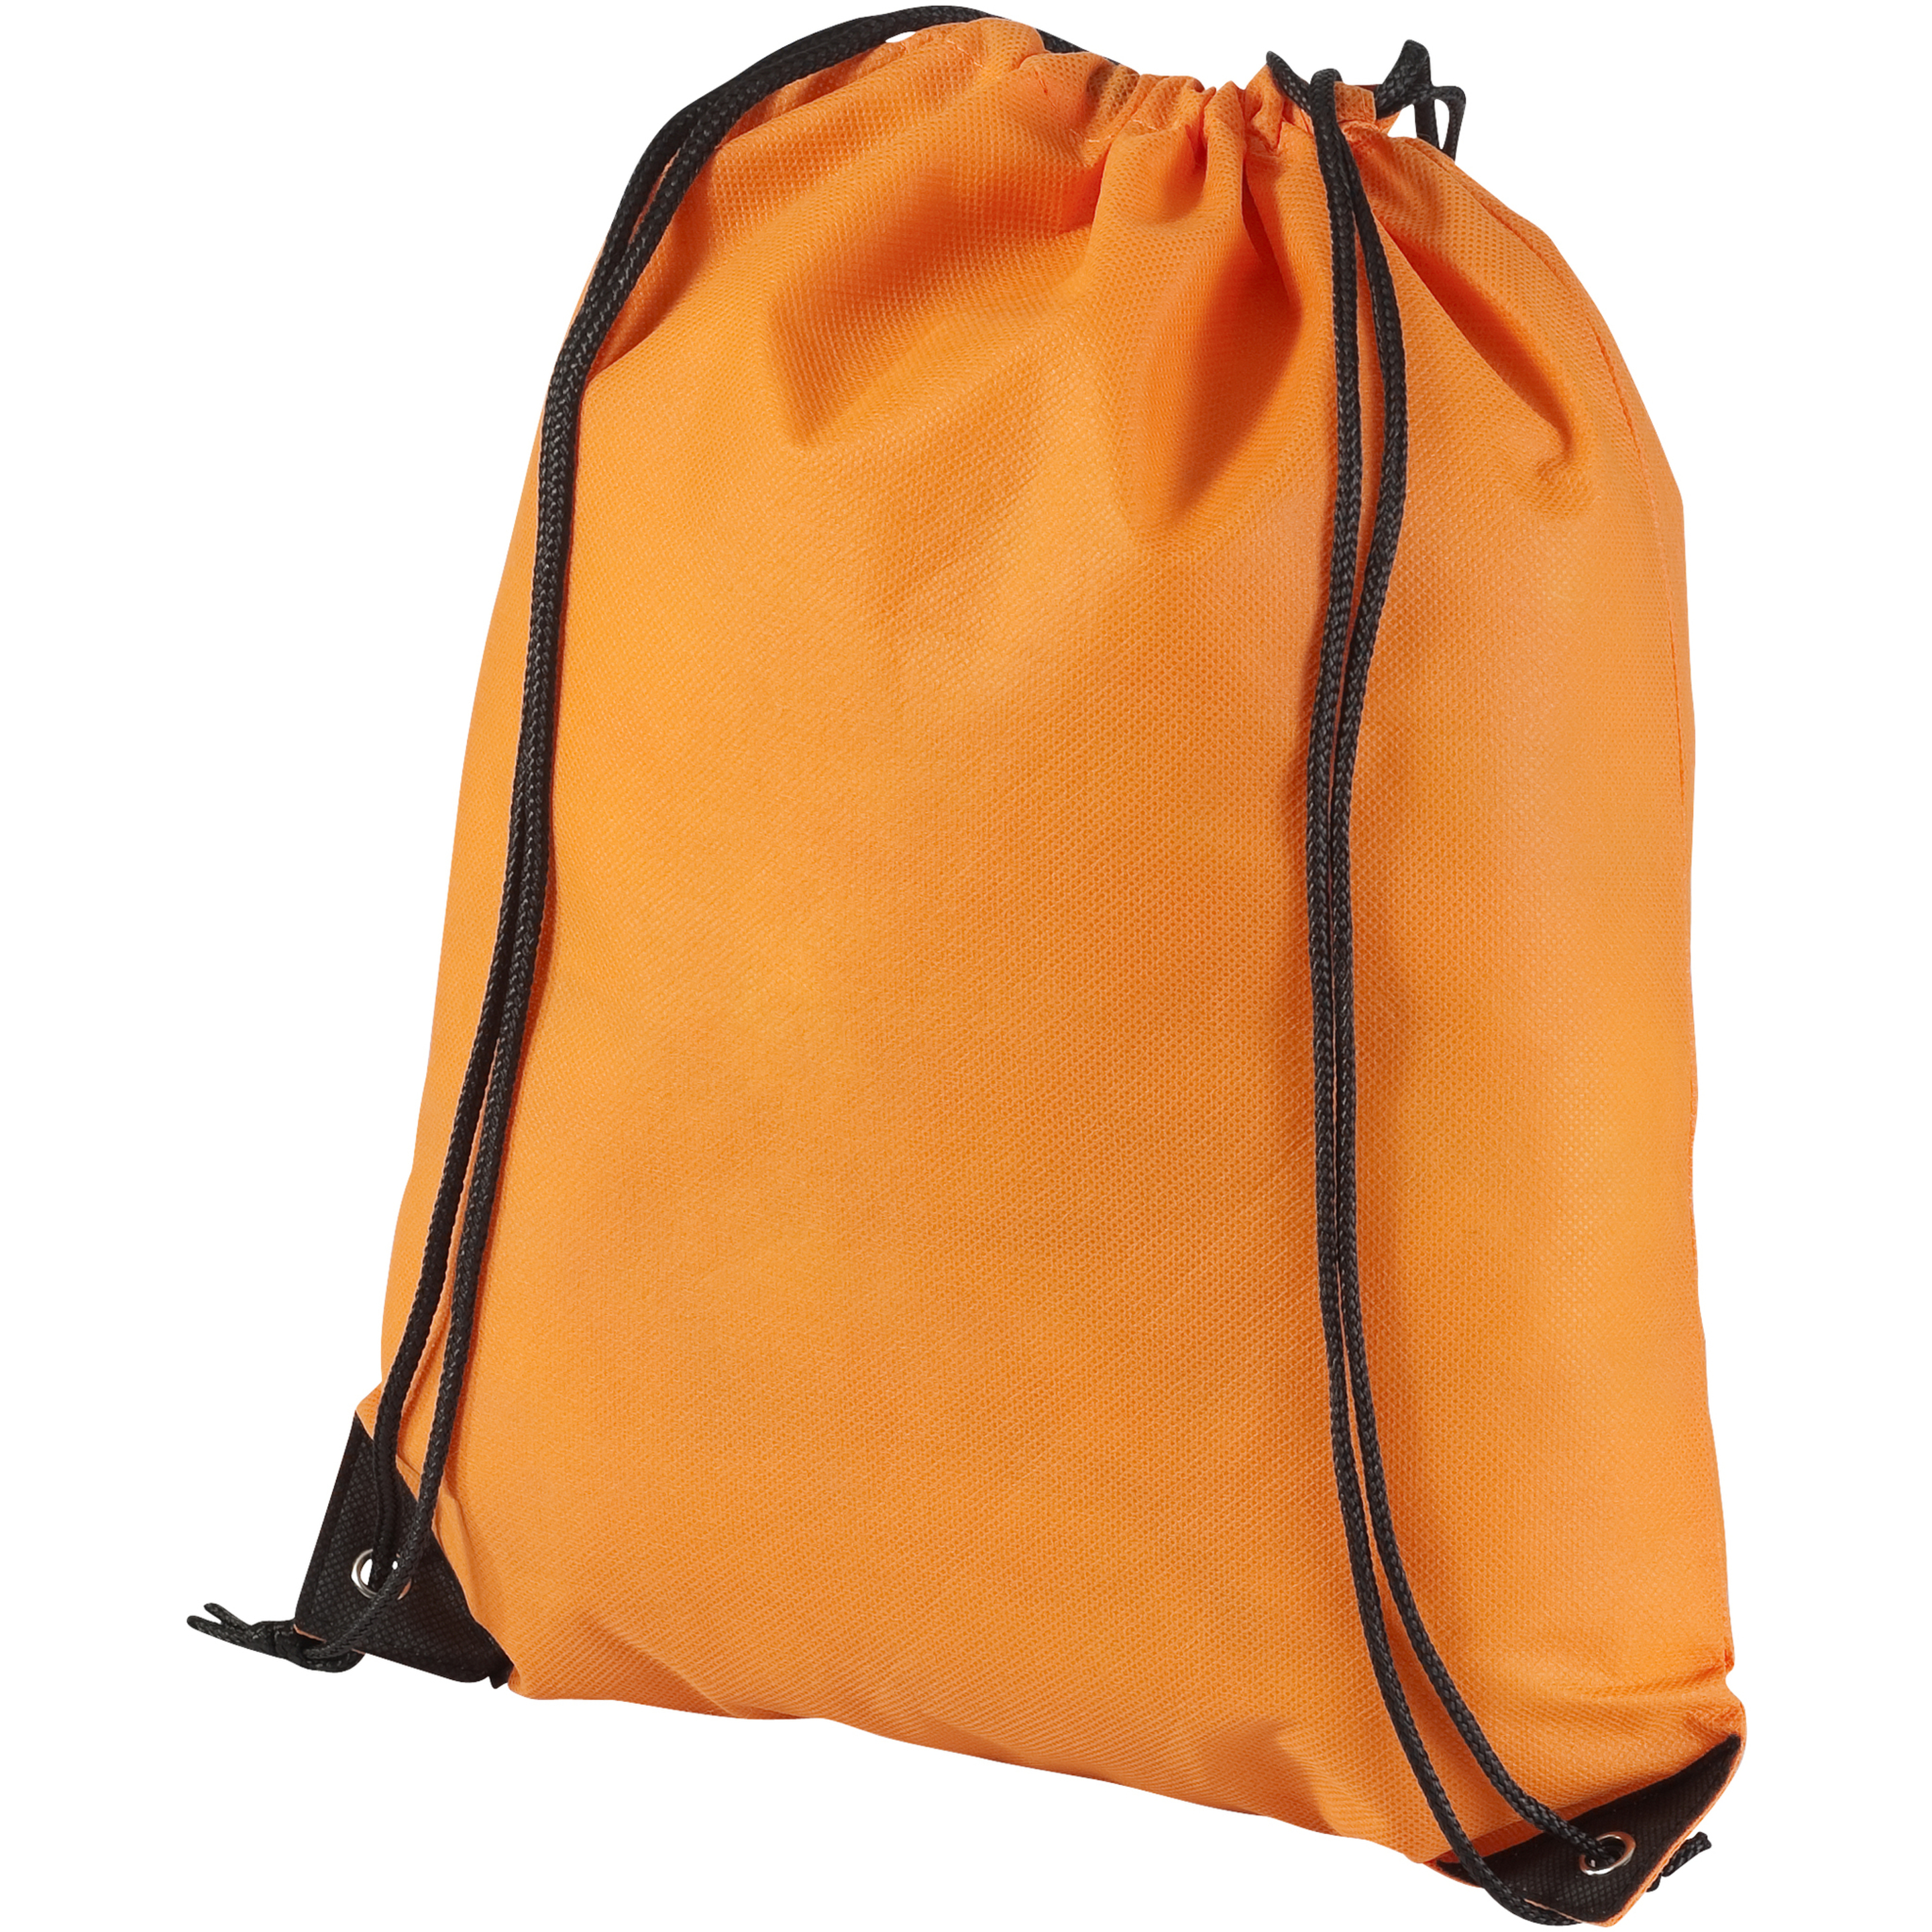 Bolsa/mochila De Cuerdas Modelo Evergreen Bullet - naranja - 